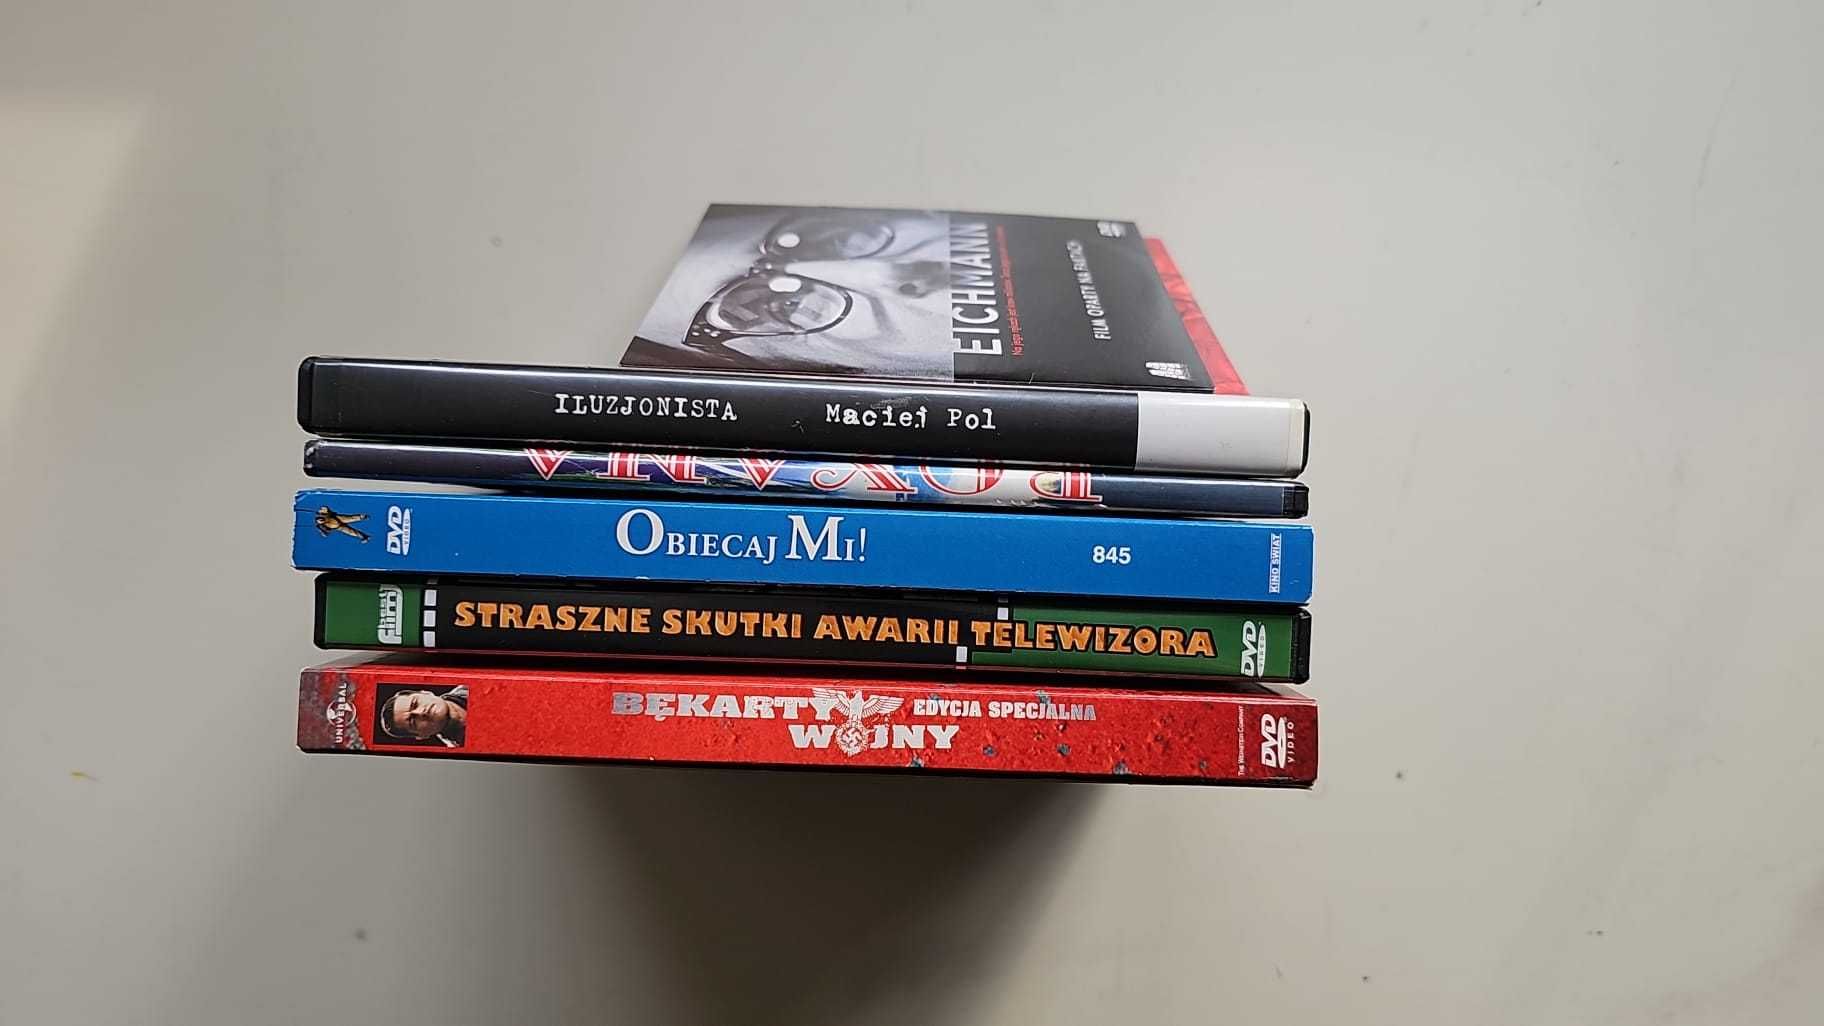 Zestaw 6 płyt DVD o różnorodnej tematyce